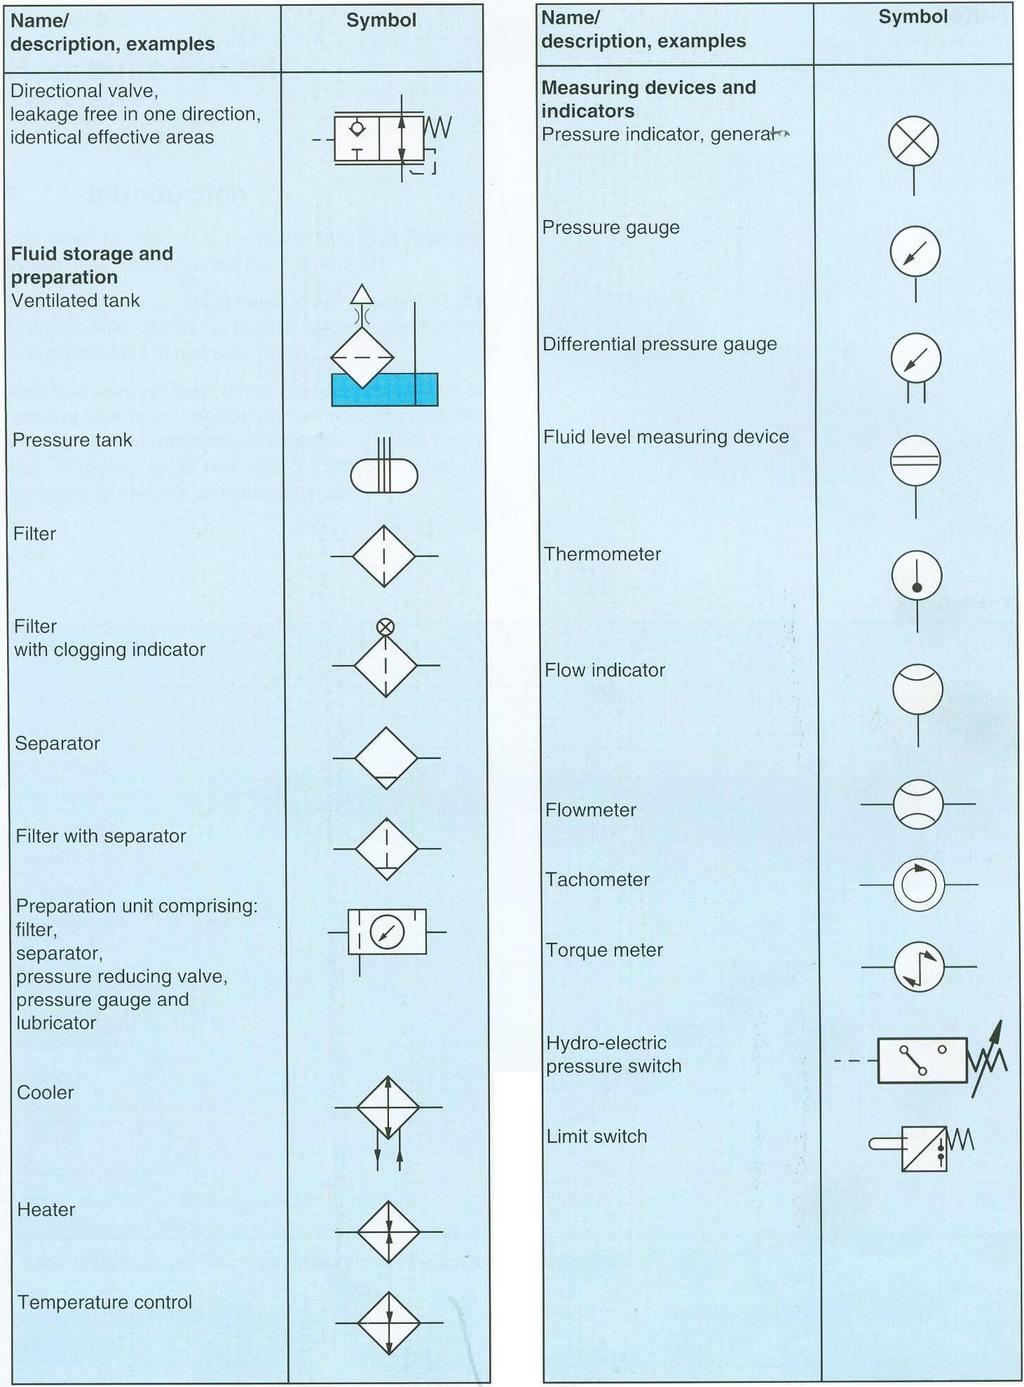 Symbols used in